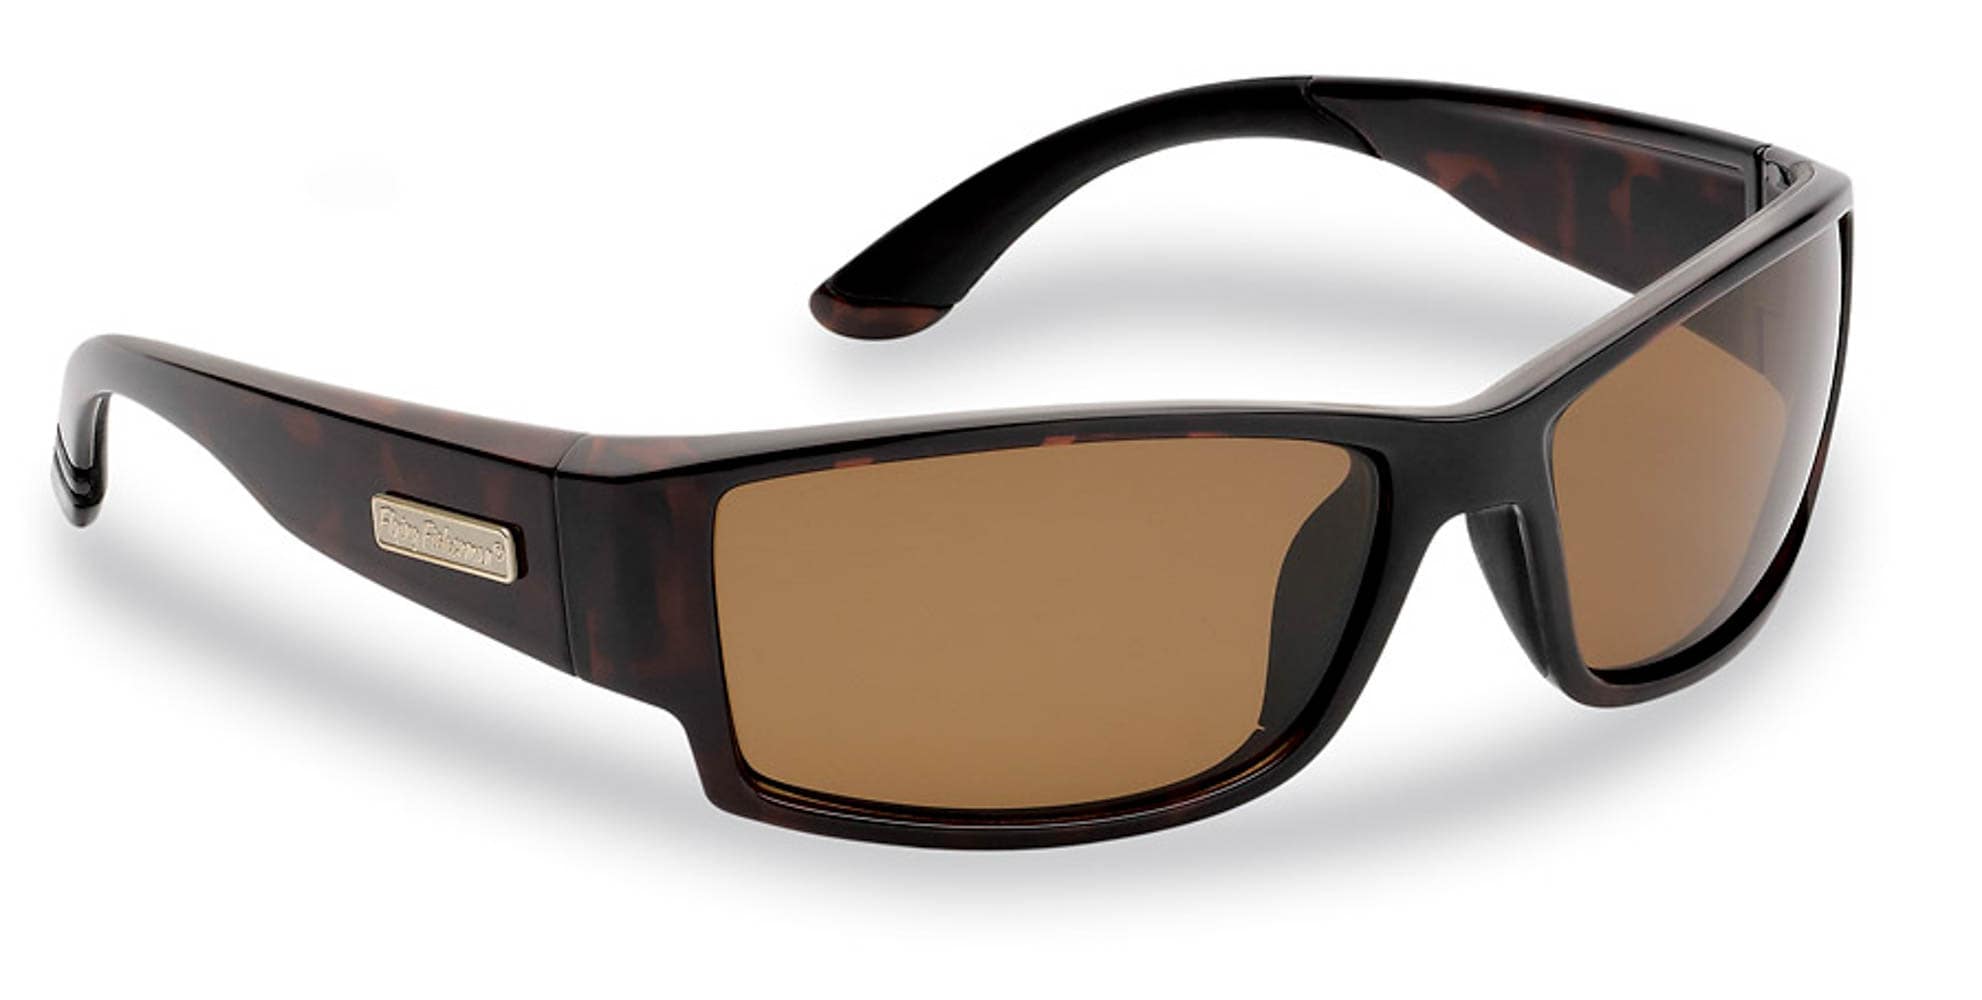 Hillman Men's Polarized Black Plastic Sunglasses | 1HE86913